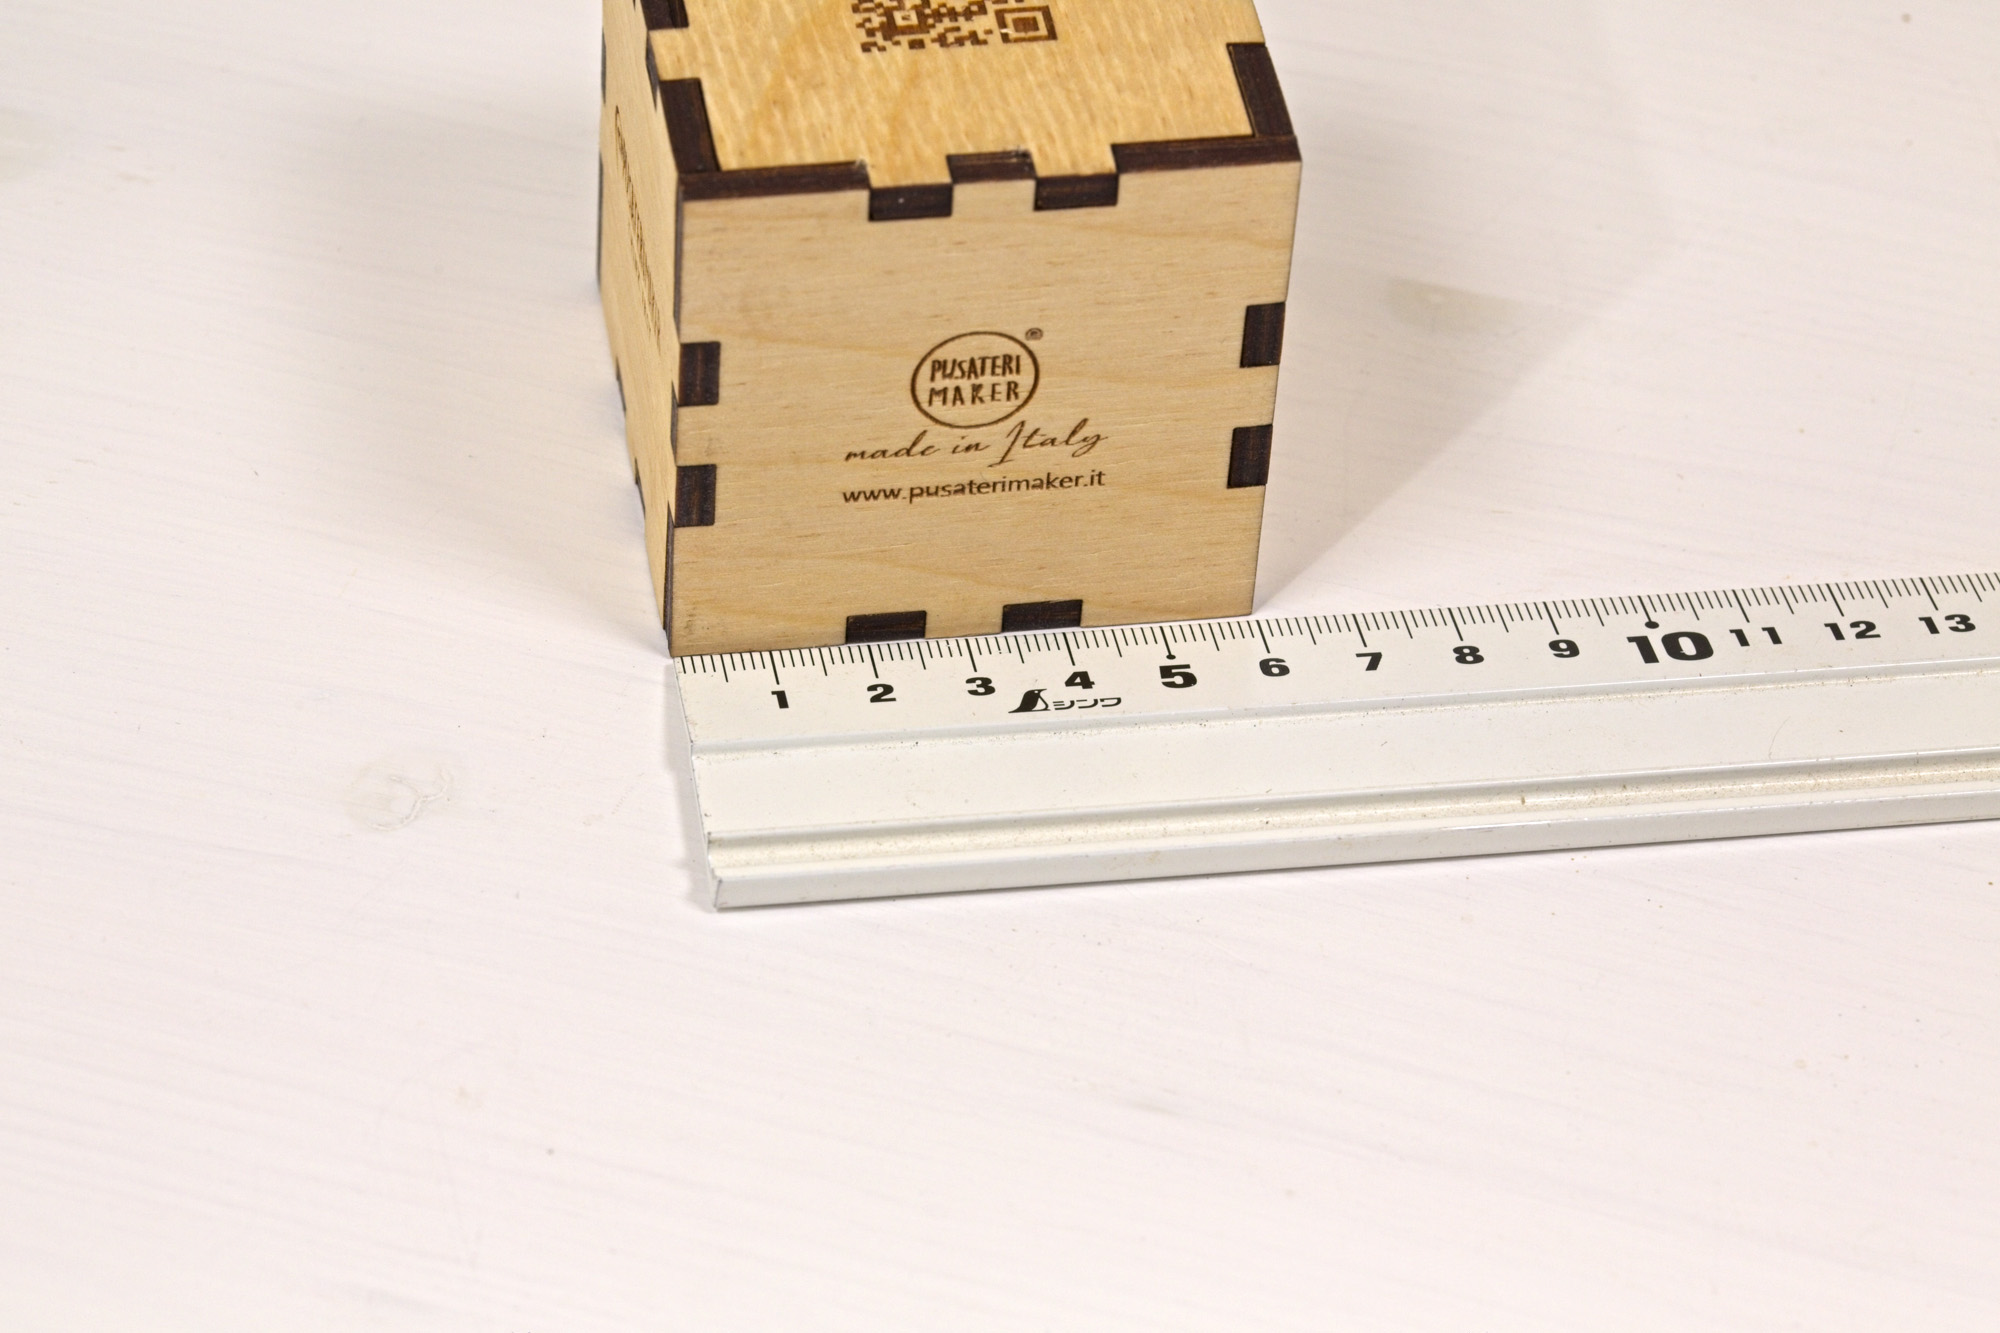 Cubetto - Espositore cubo di legno